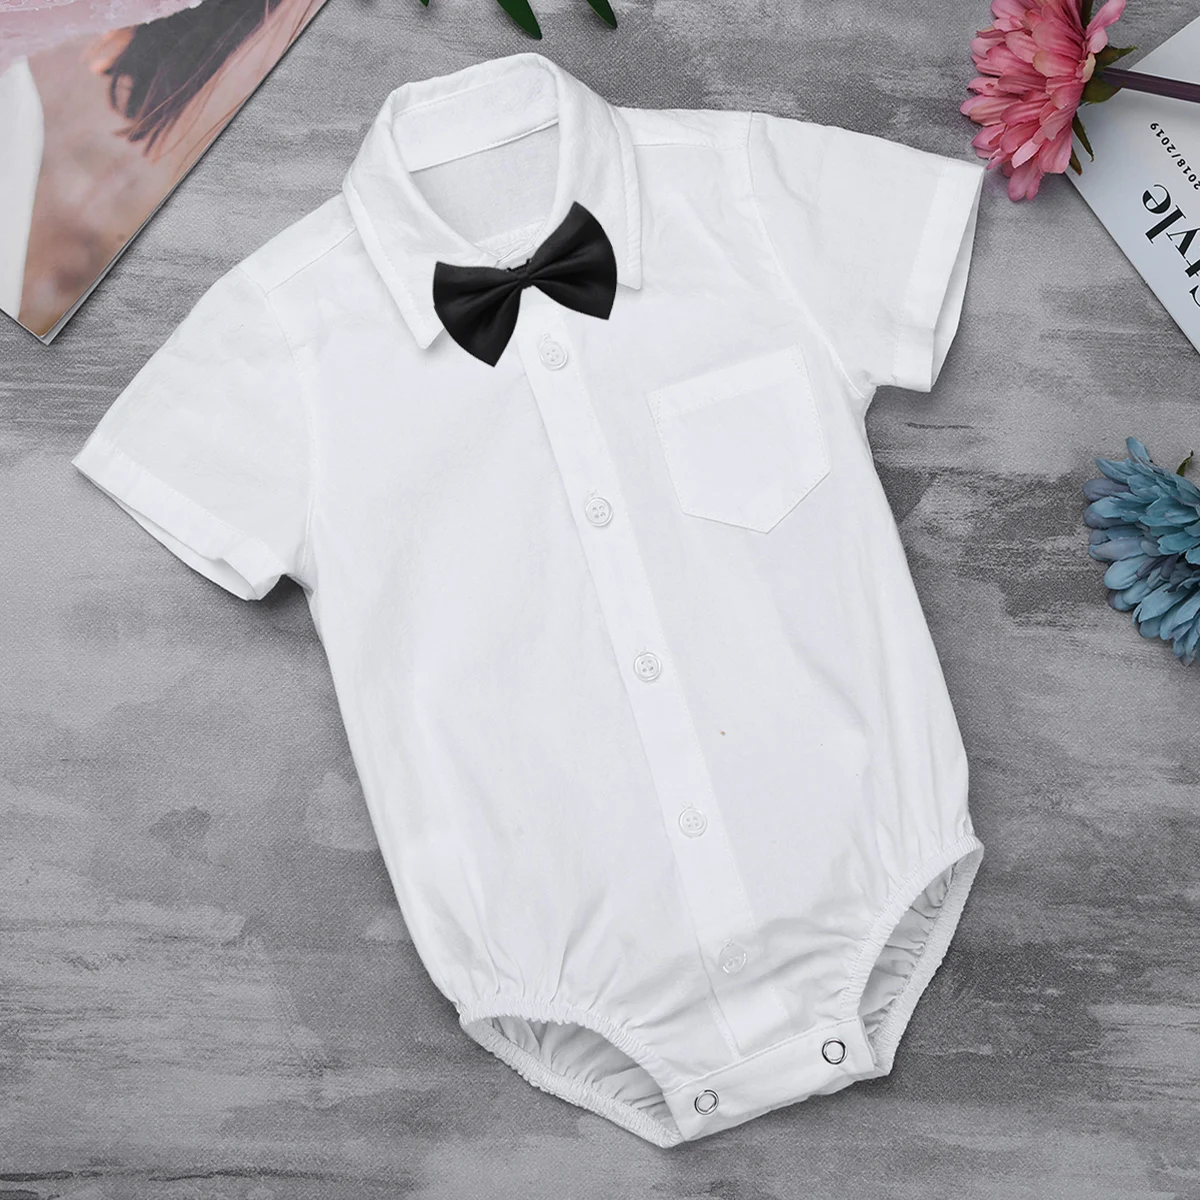 FEESHOW/детское боди для мальчиков; одежда для маленьких джентльменов; рубашка; комбинезон; боди; комплект с галстуком-бабочкой для малышей